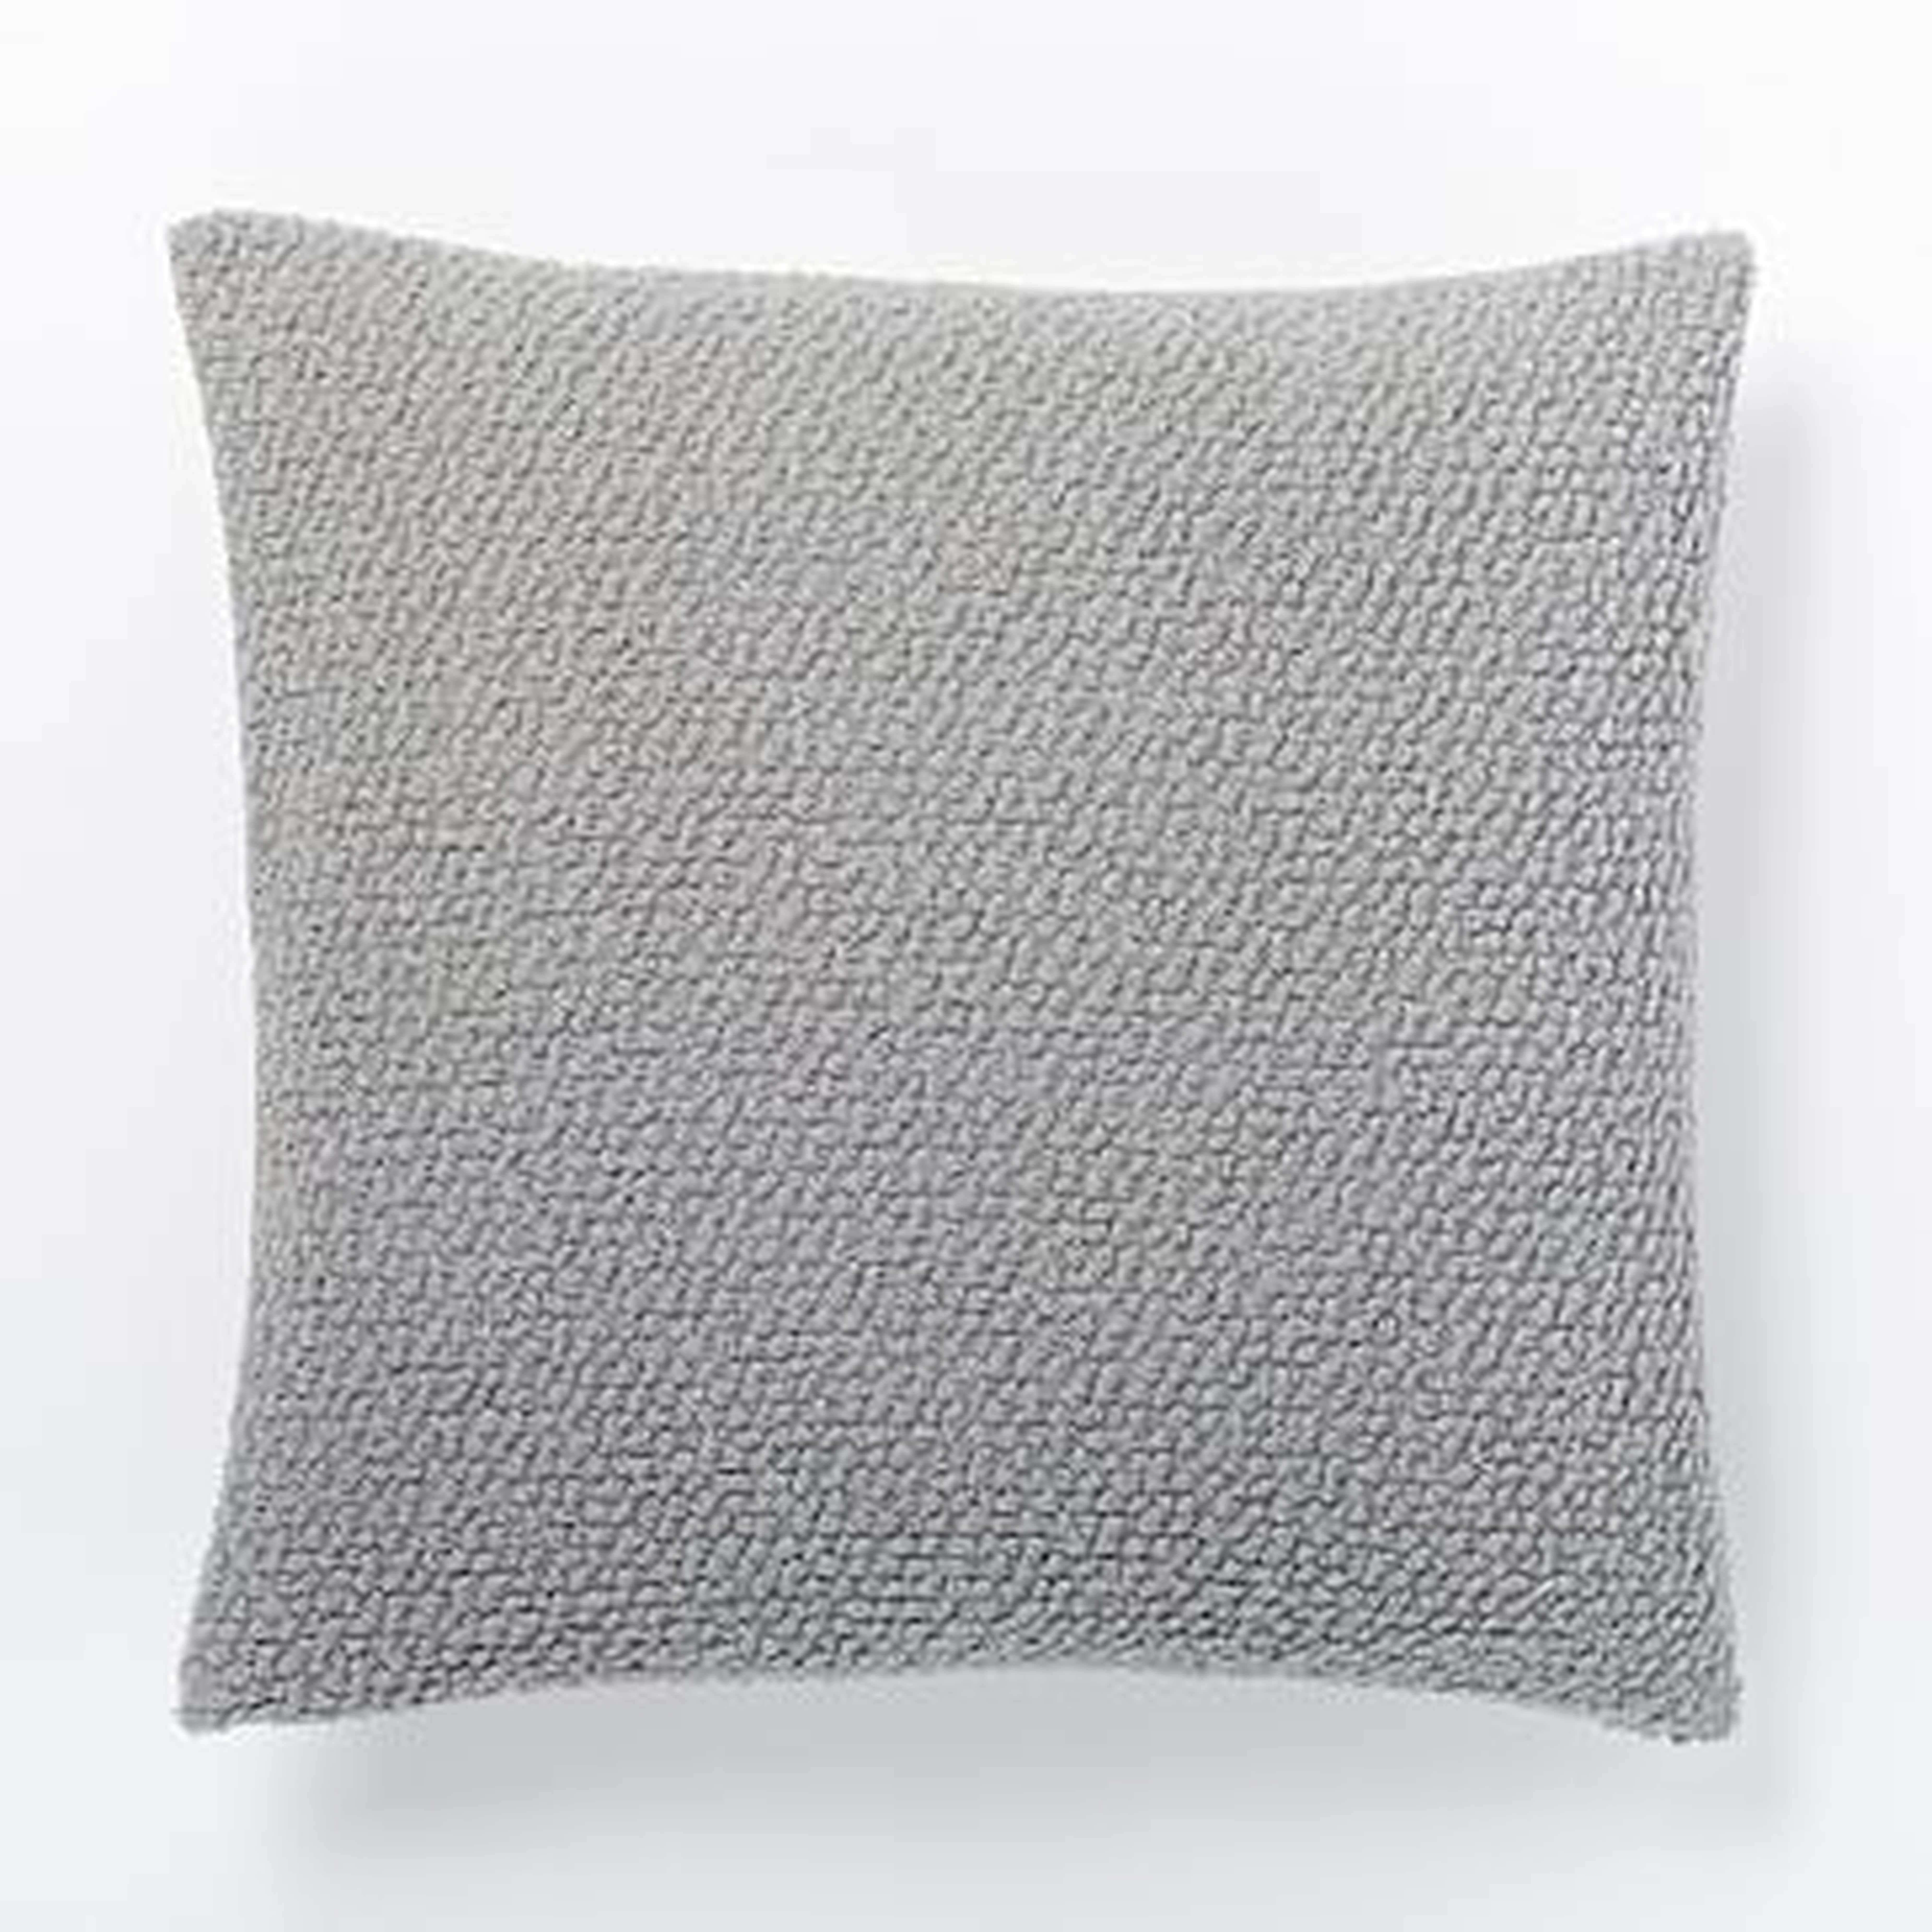 Cozy Boucle Pillow Cover, 18"x18", Platinum - West Elm